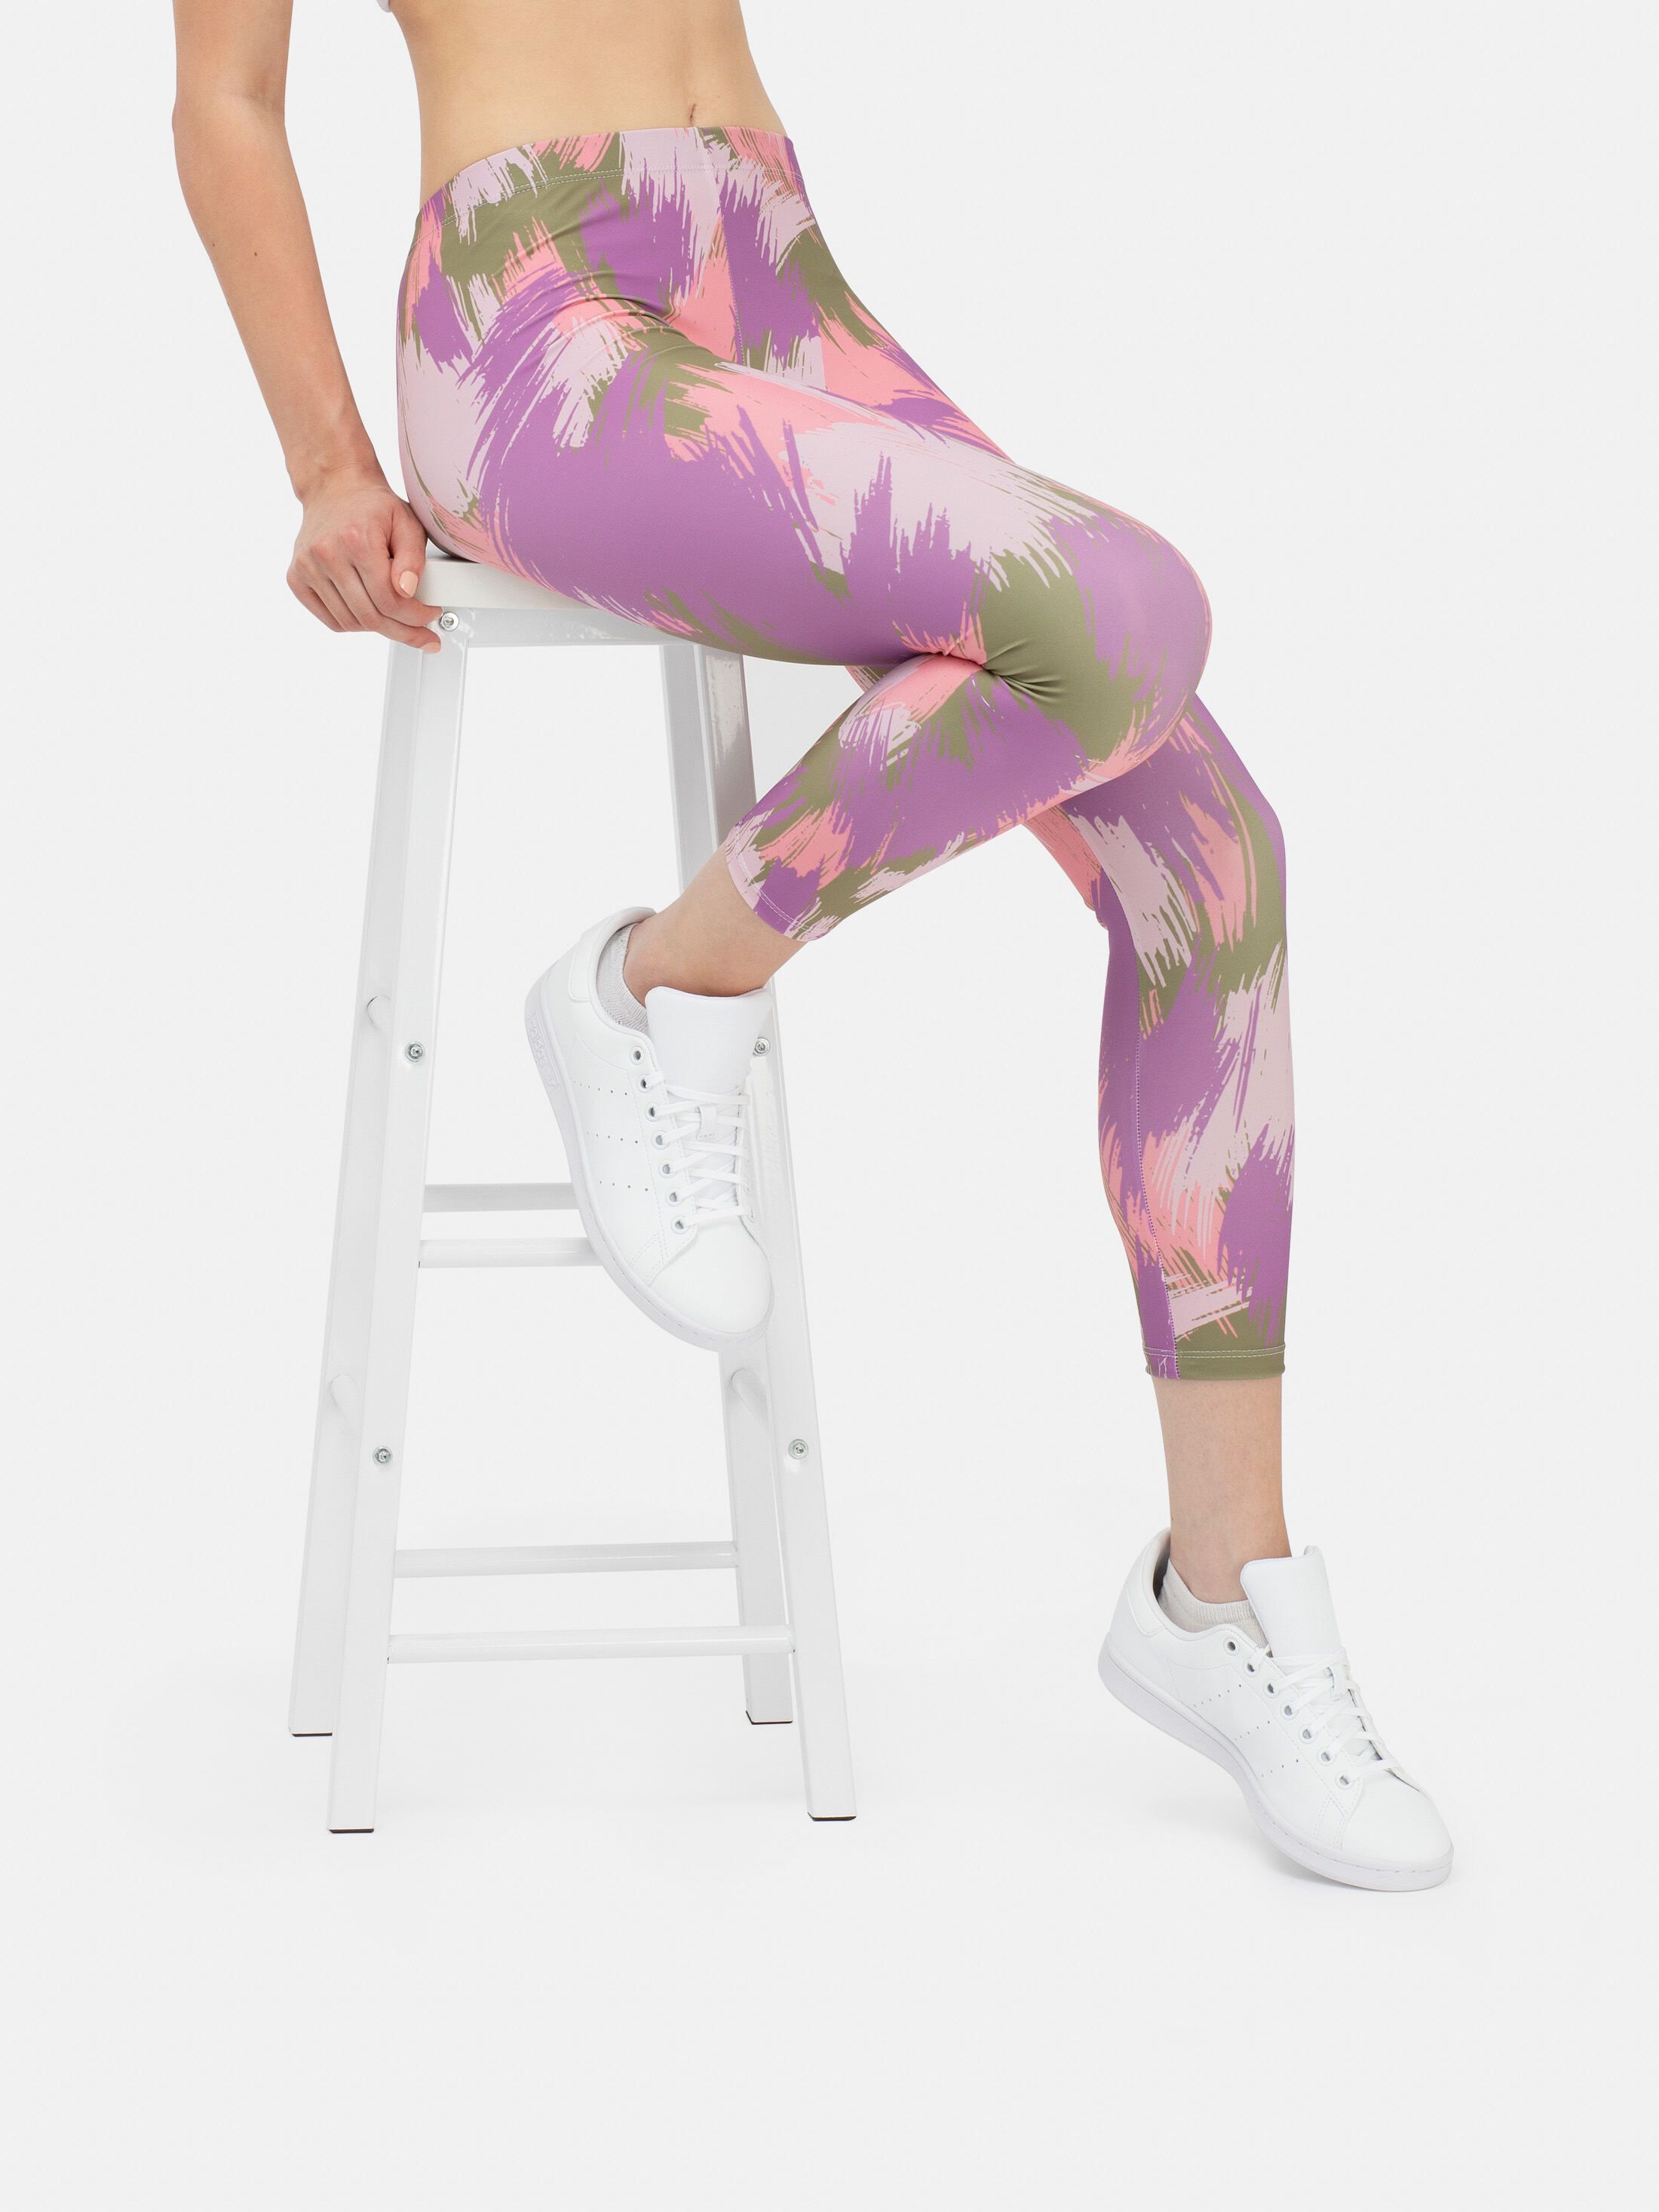 Custom Printed Leggings | Design Leggings Personalized